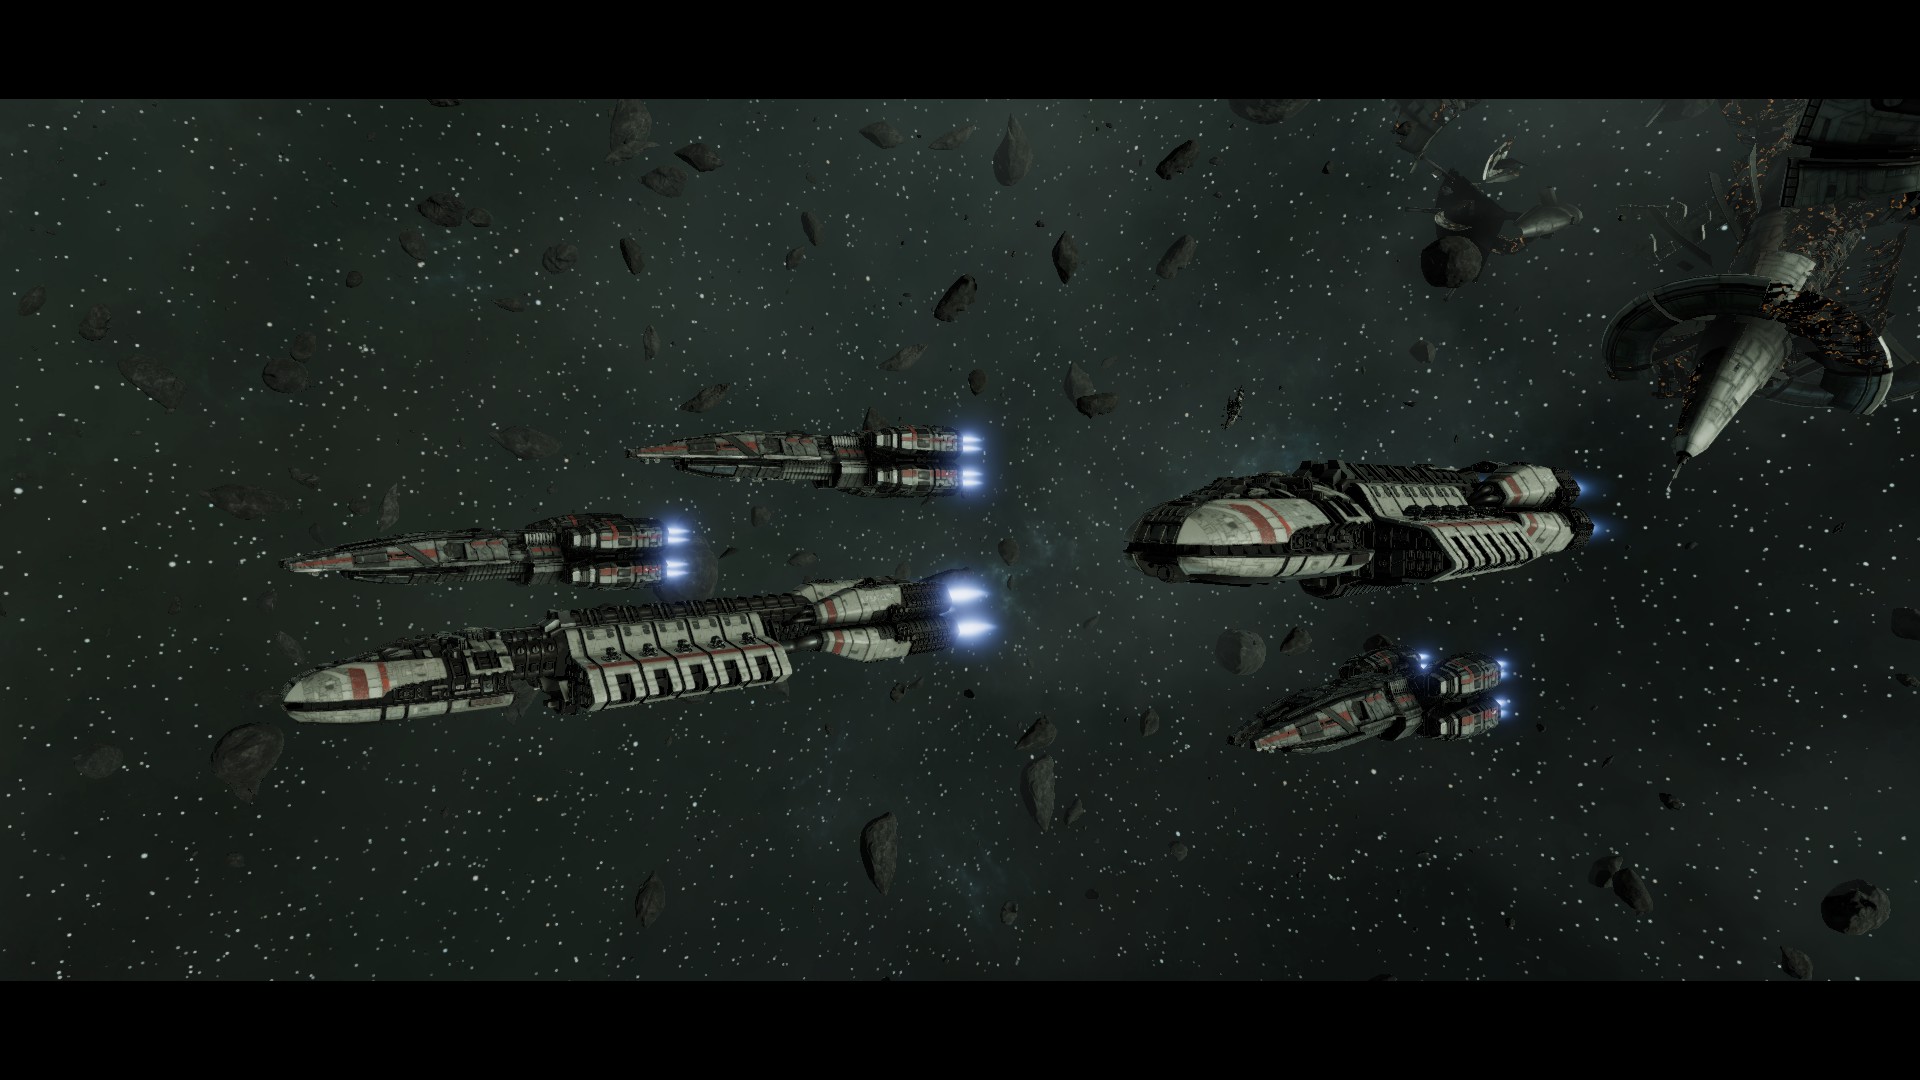 Battlestar Galactica Deadlock - Reinforcement Pack DLC Steam CD Key 3.93 usd